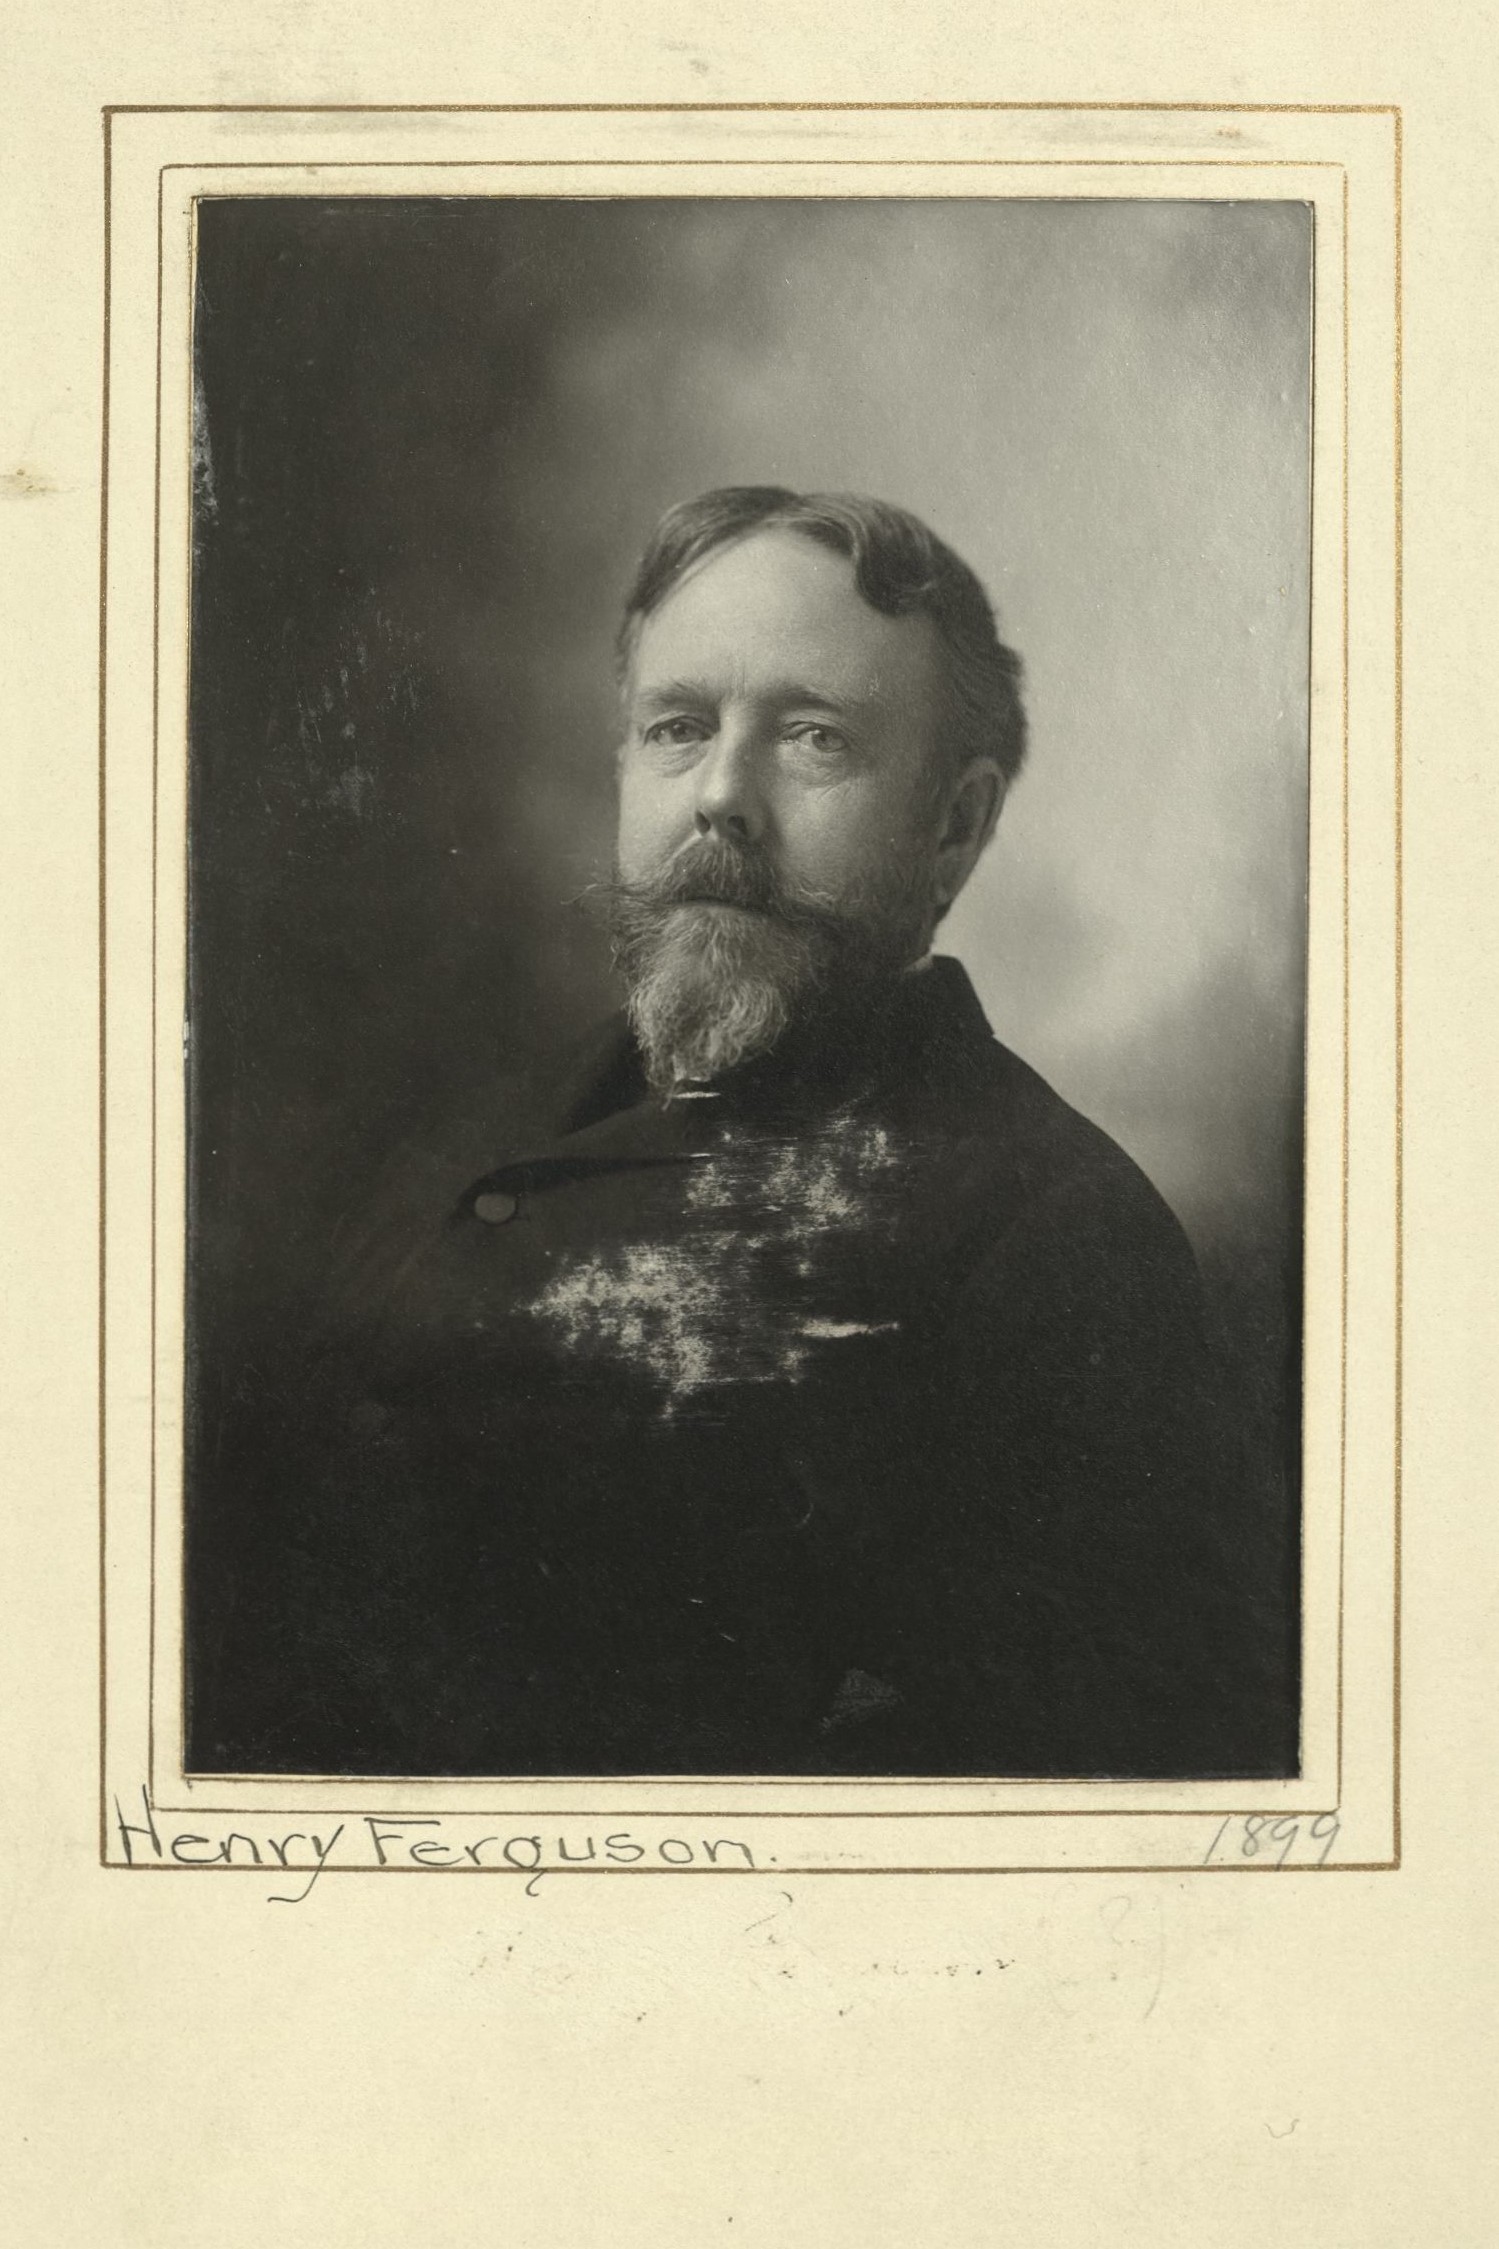 Member portrait of Henry Ferguson